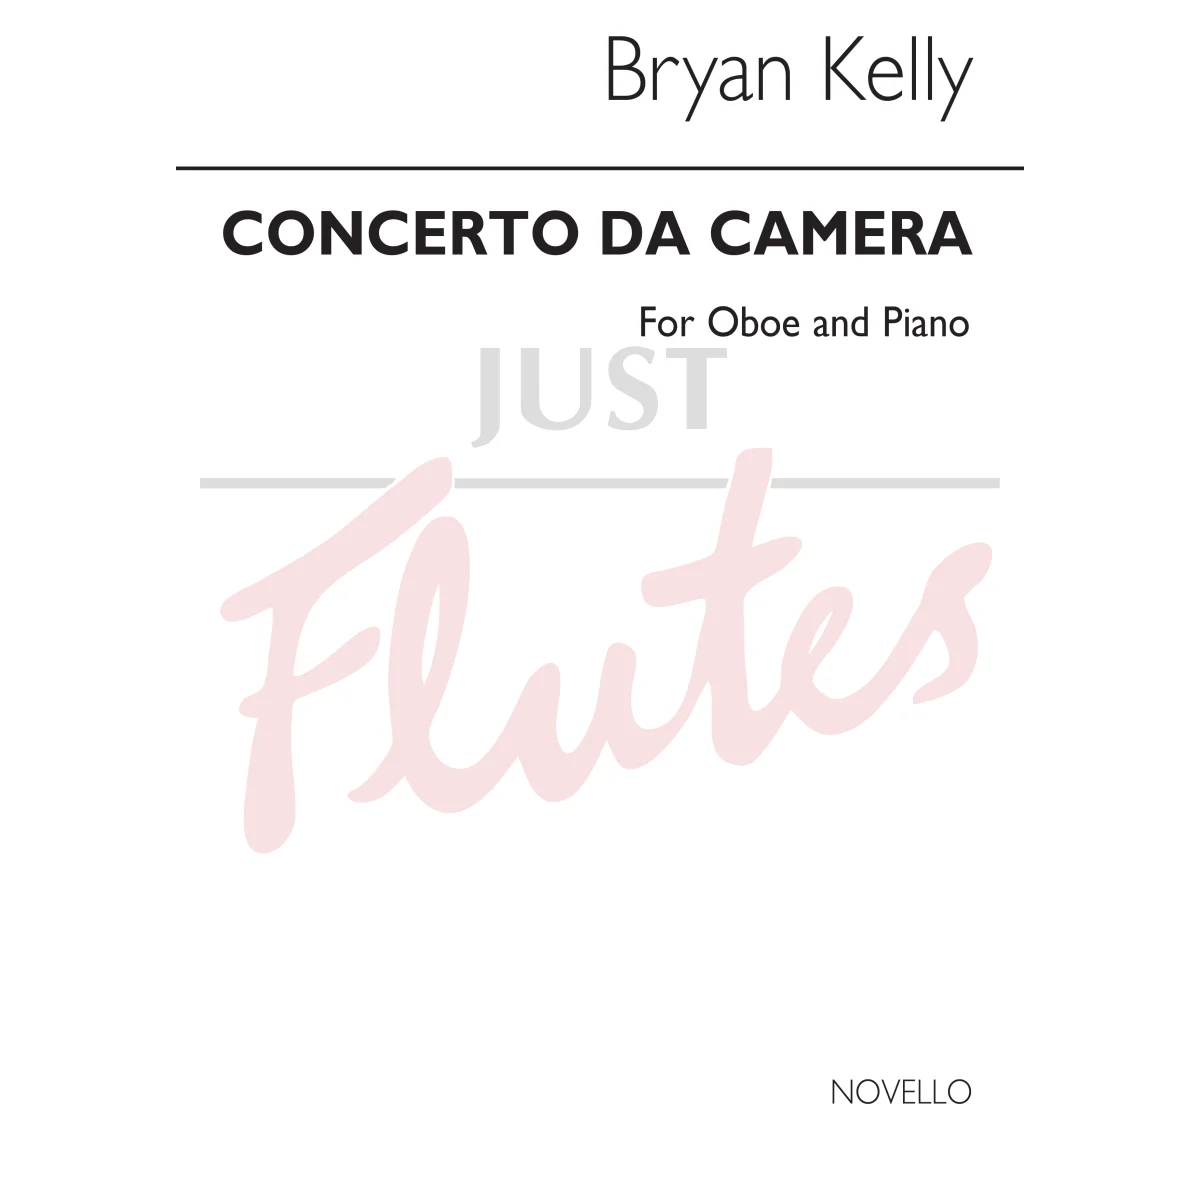 Concerto da Camera for Oboe and Piano